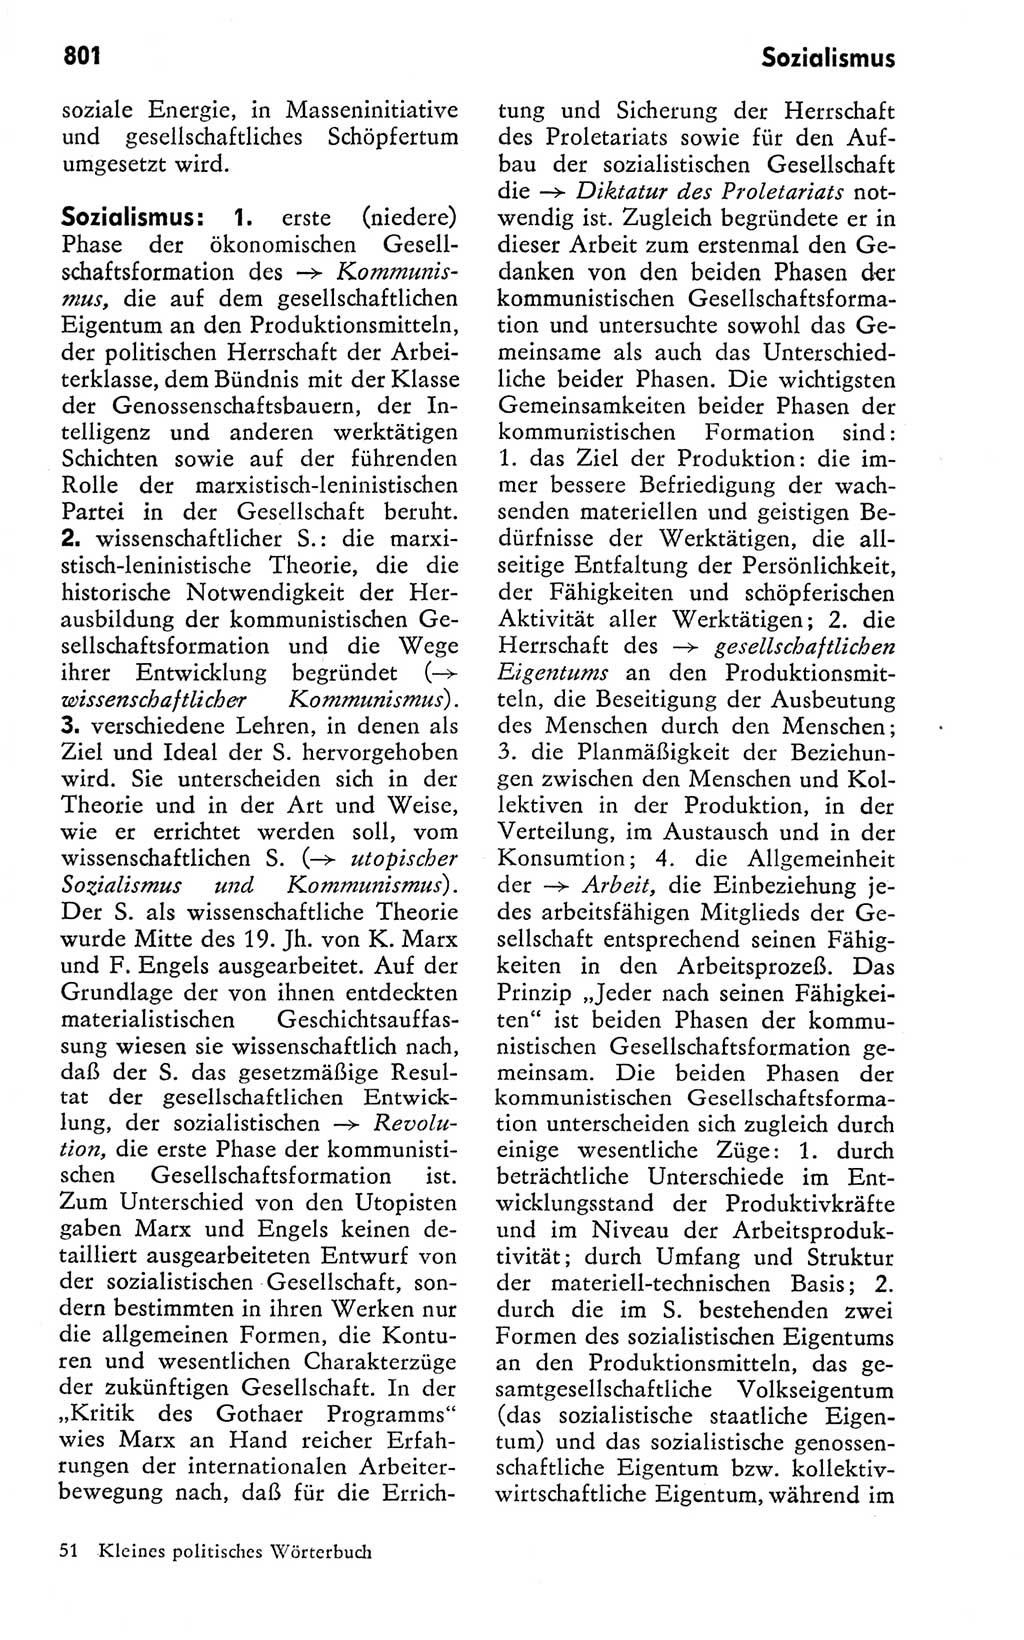 Kleines politisches Wörterbuch [Deutsche Demokratische Republik (DDR)] 1978, Seite 801 (Kl. pol. Wb. DDR 1978, S. 801)